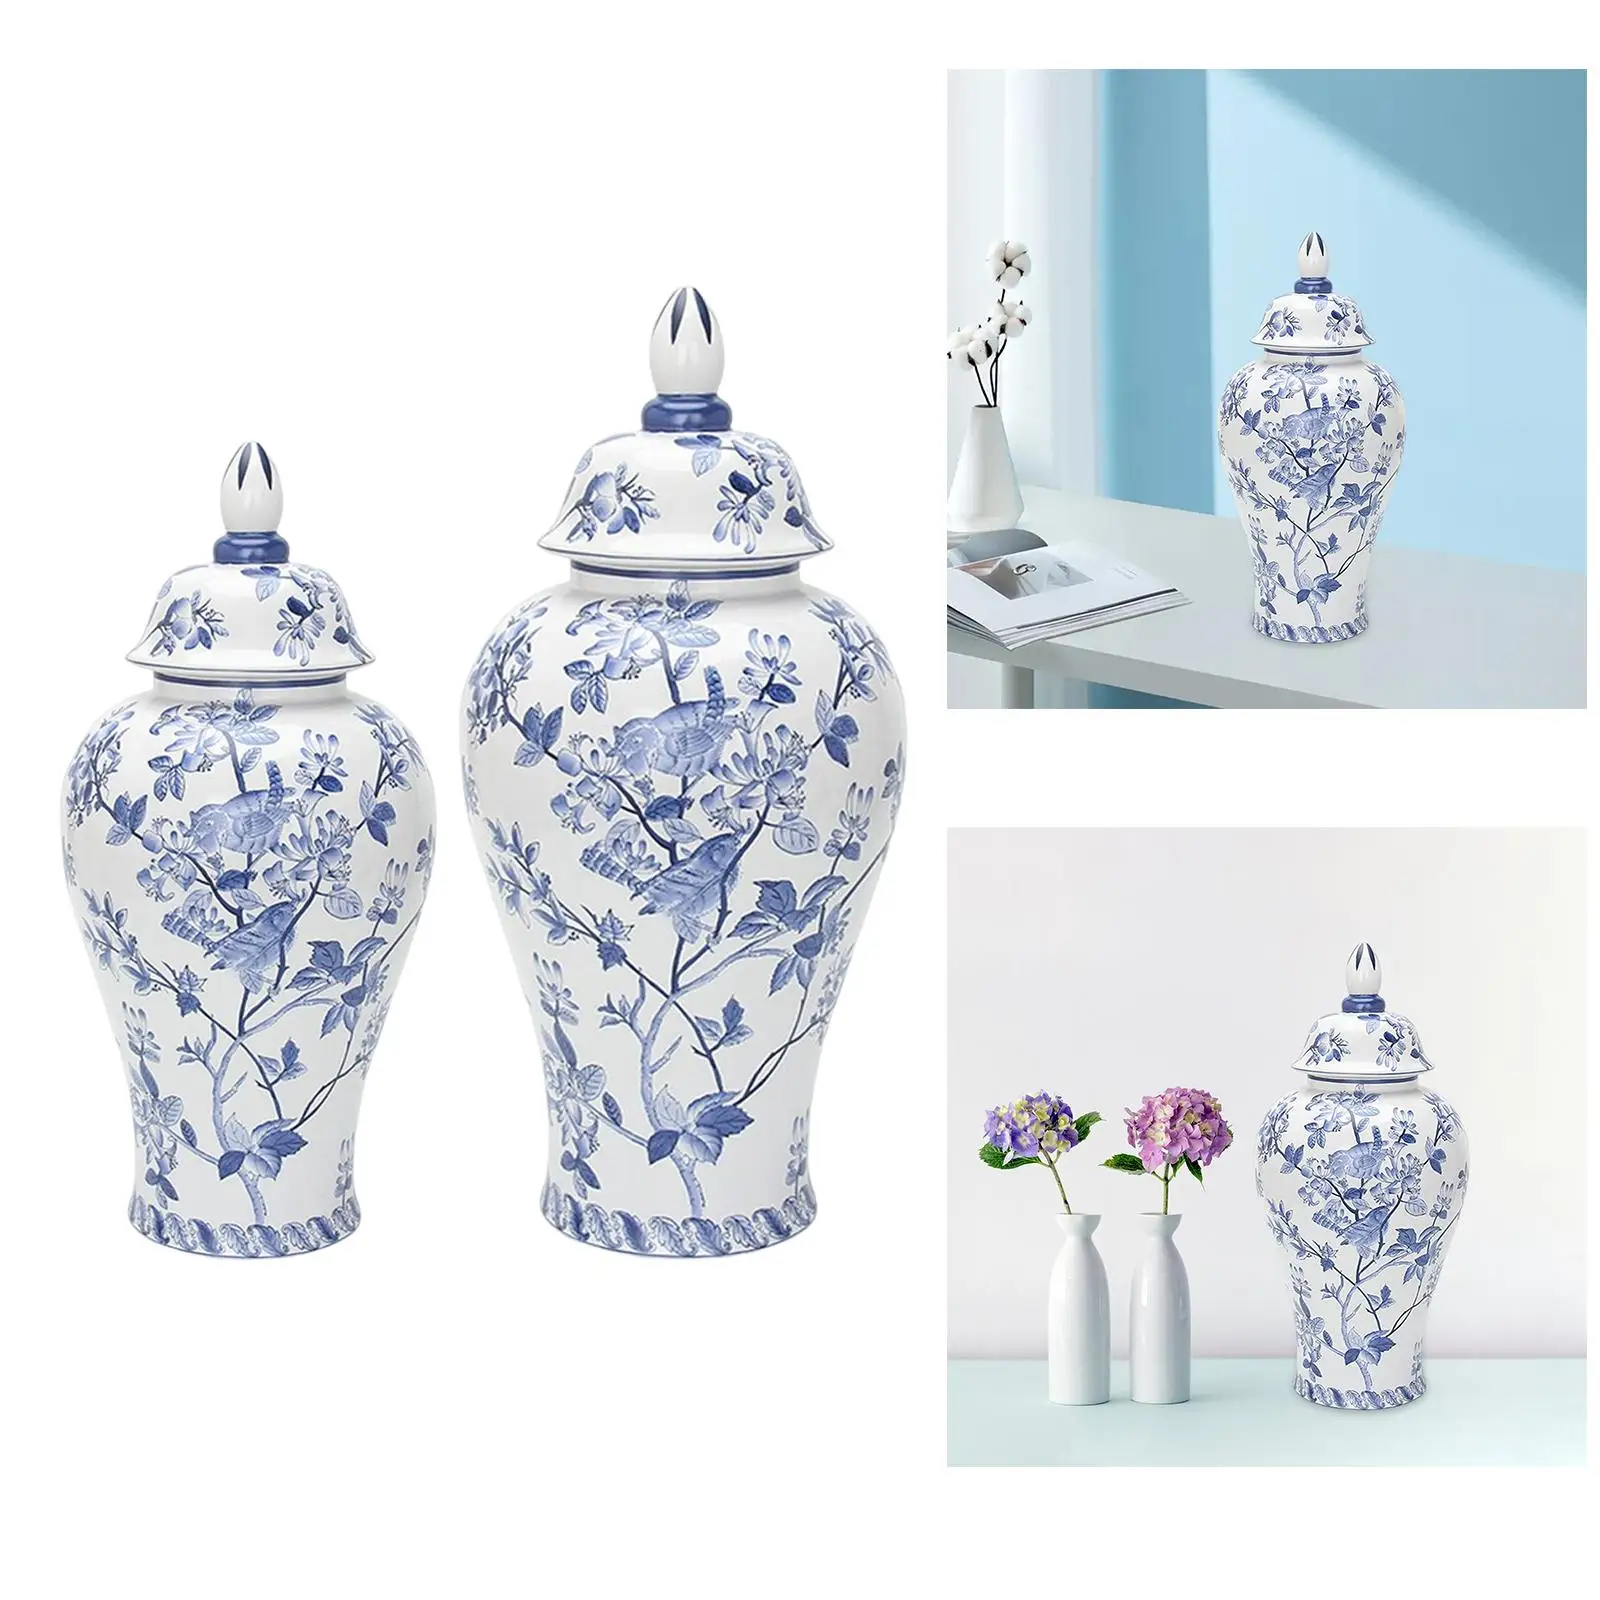 Ceramic Flower Vase Handicraft Decor Porcelain Ginger Jar for Collection